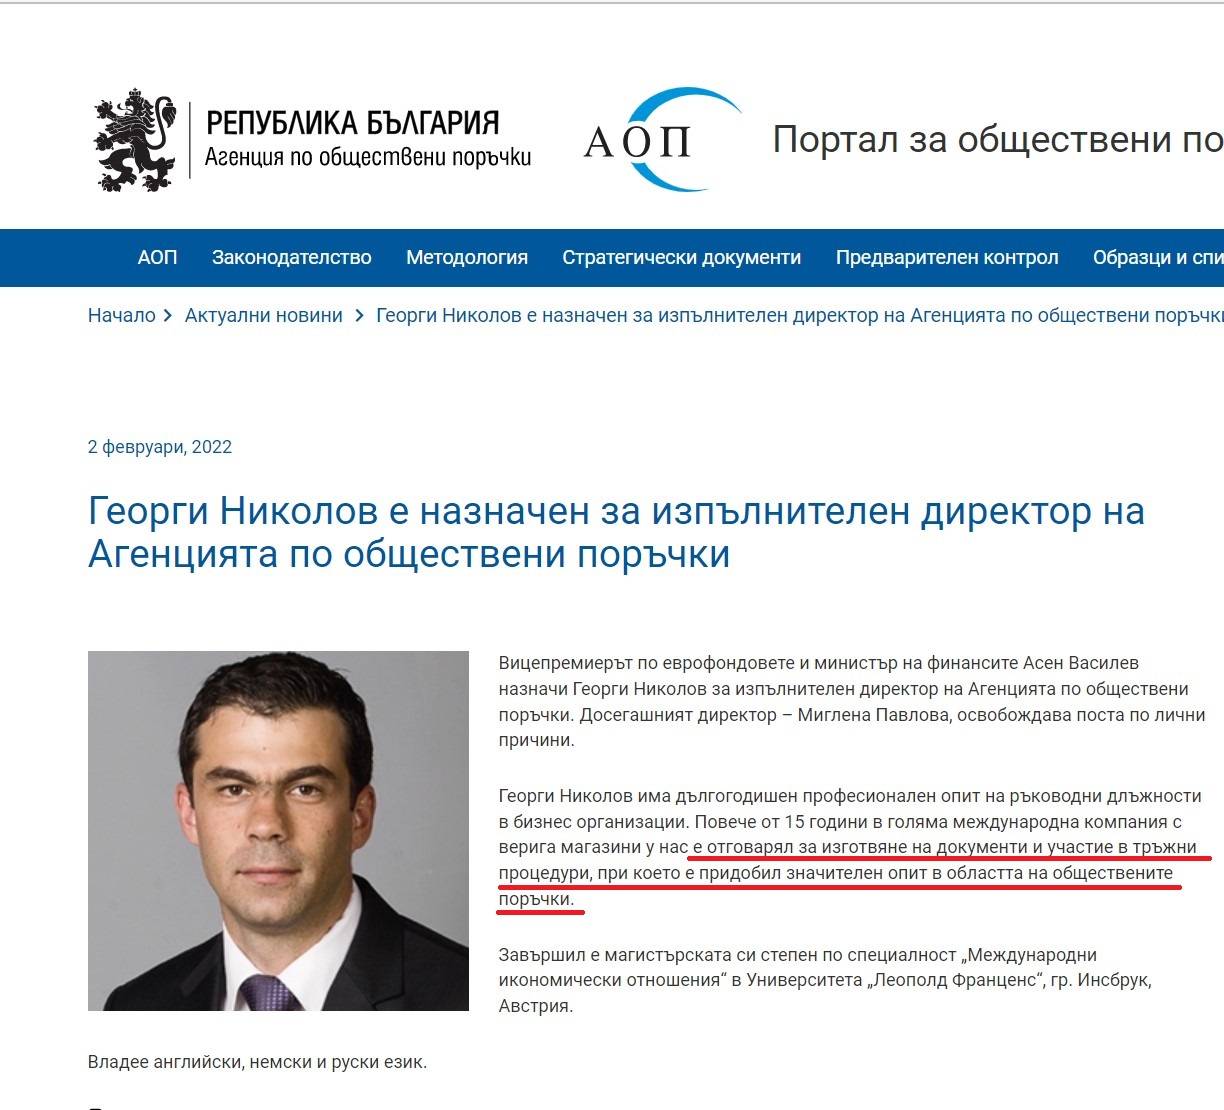 Георги Николов е представен като тежък специалист по обществени поръчки на сайта на АОП